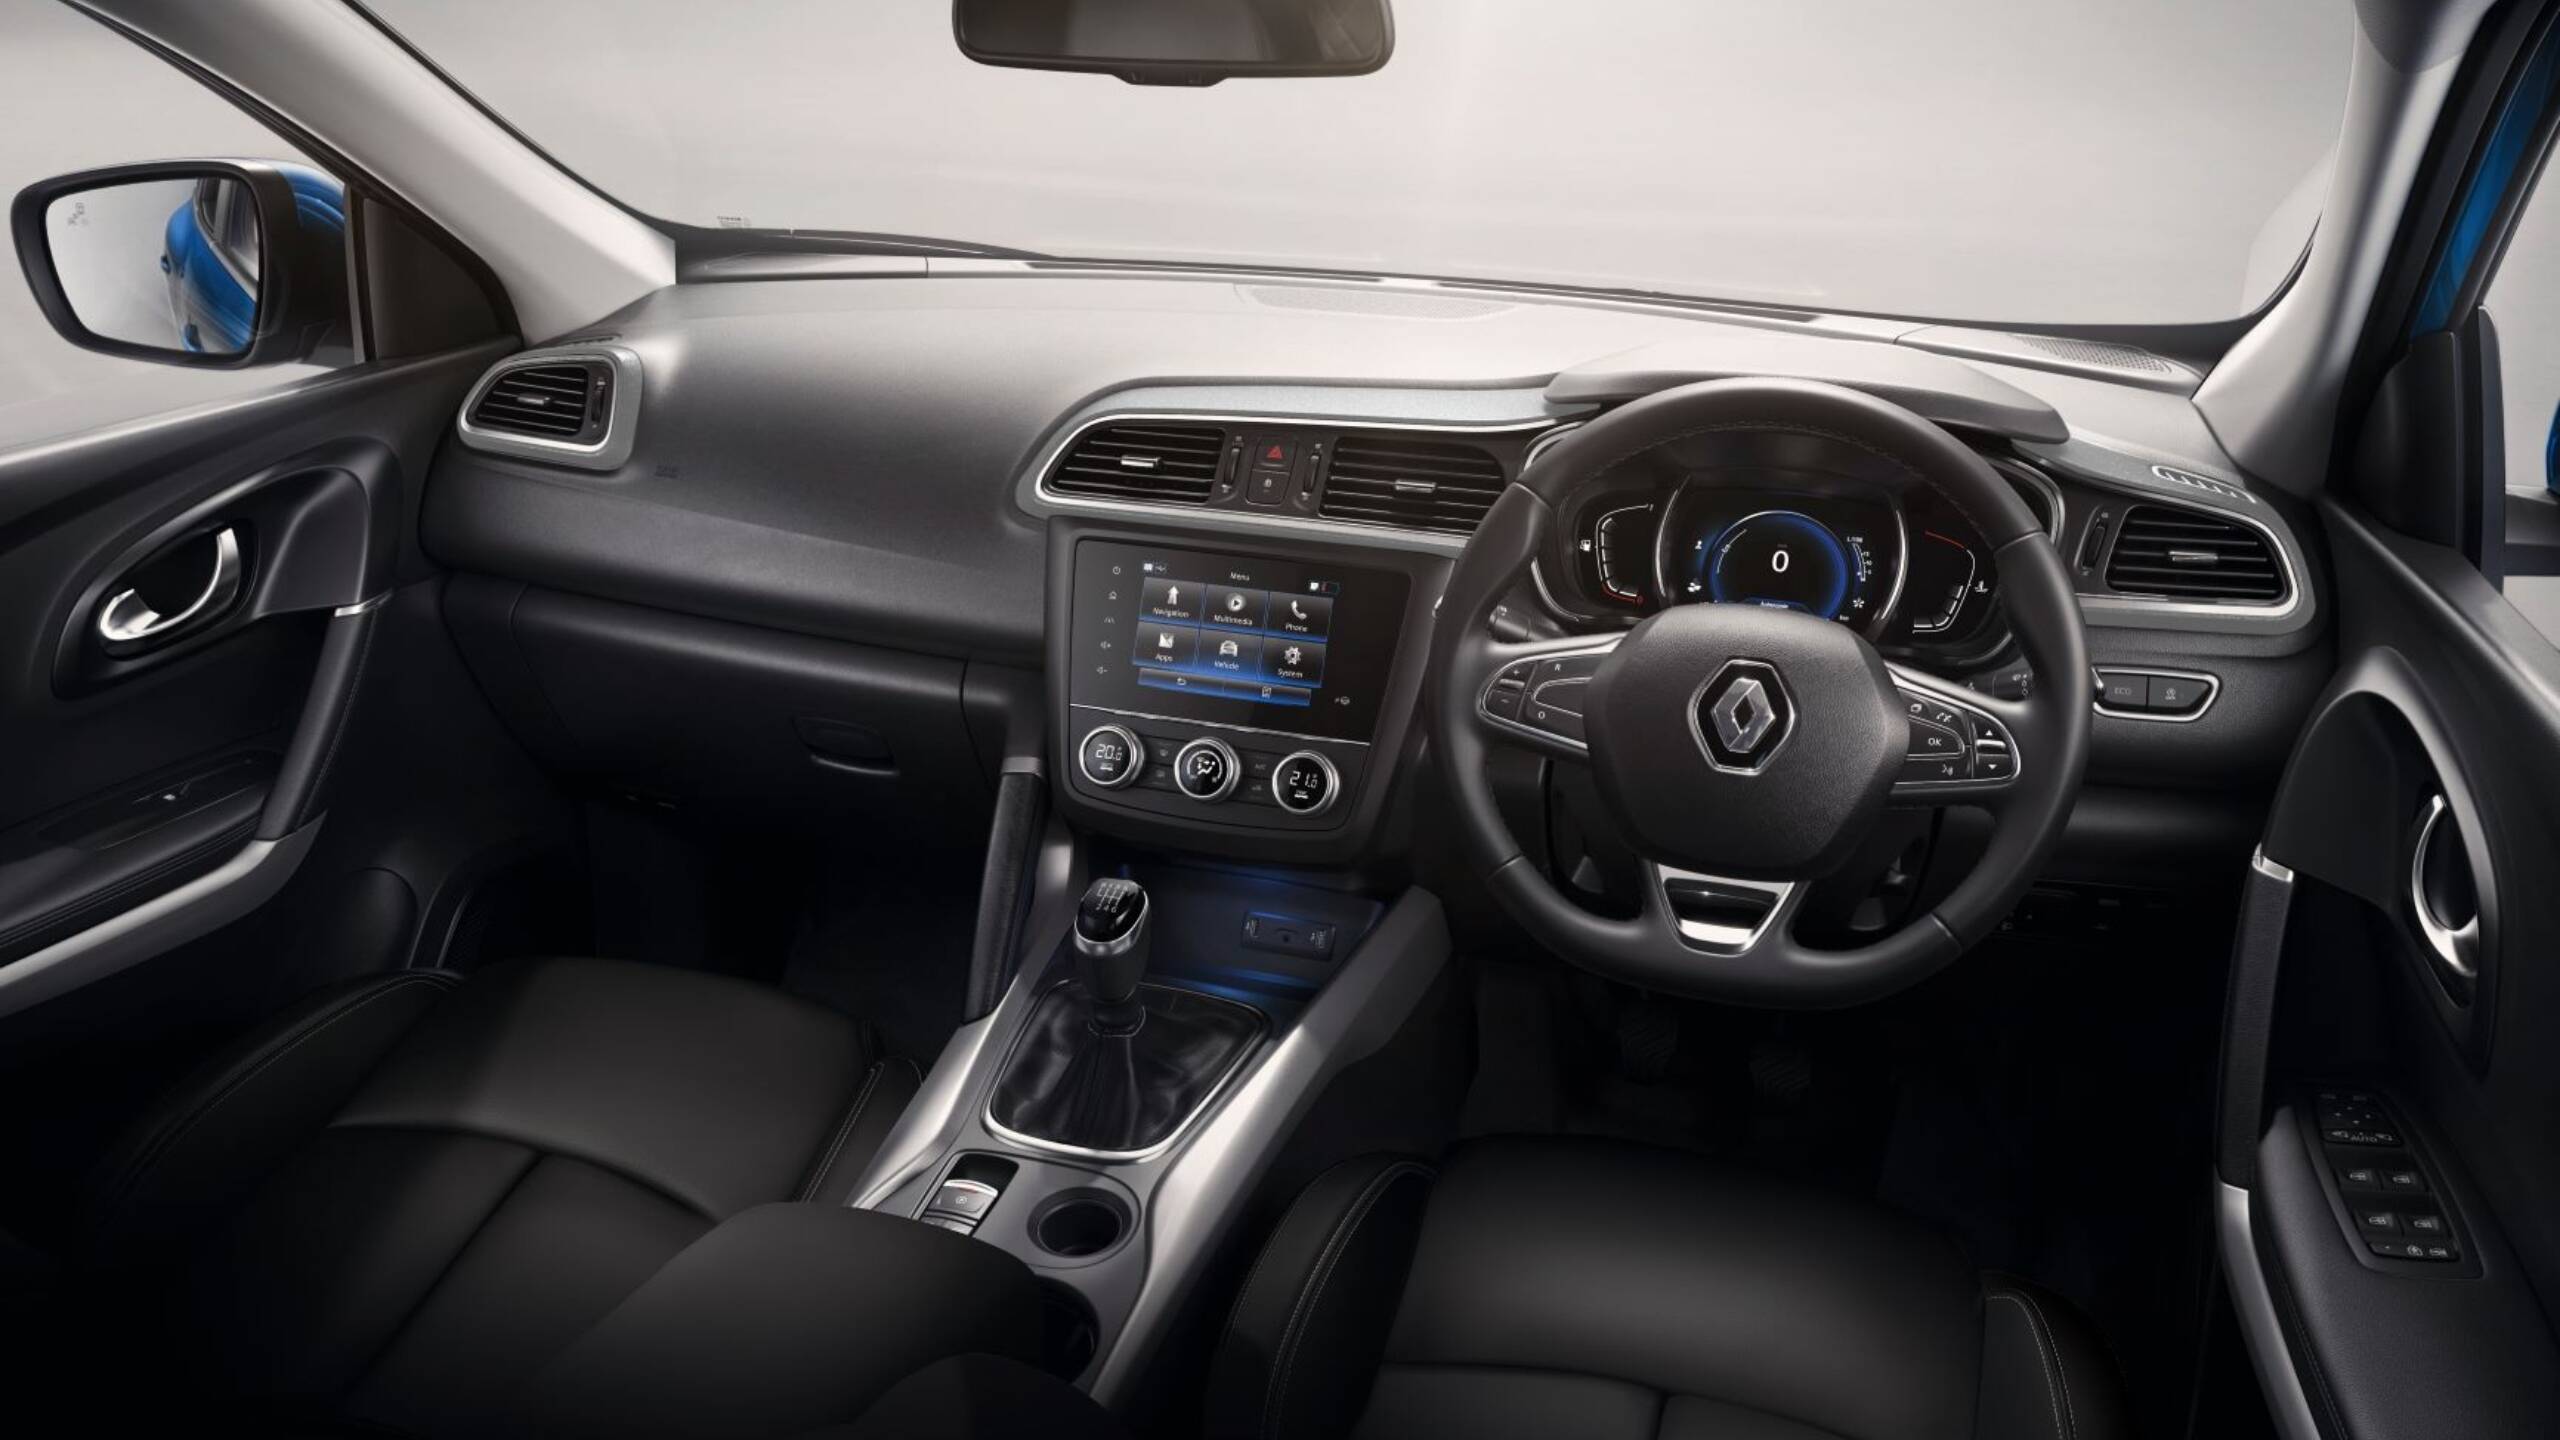 Renault KADJAR interior